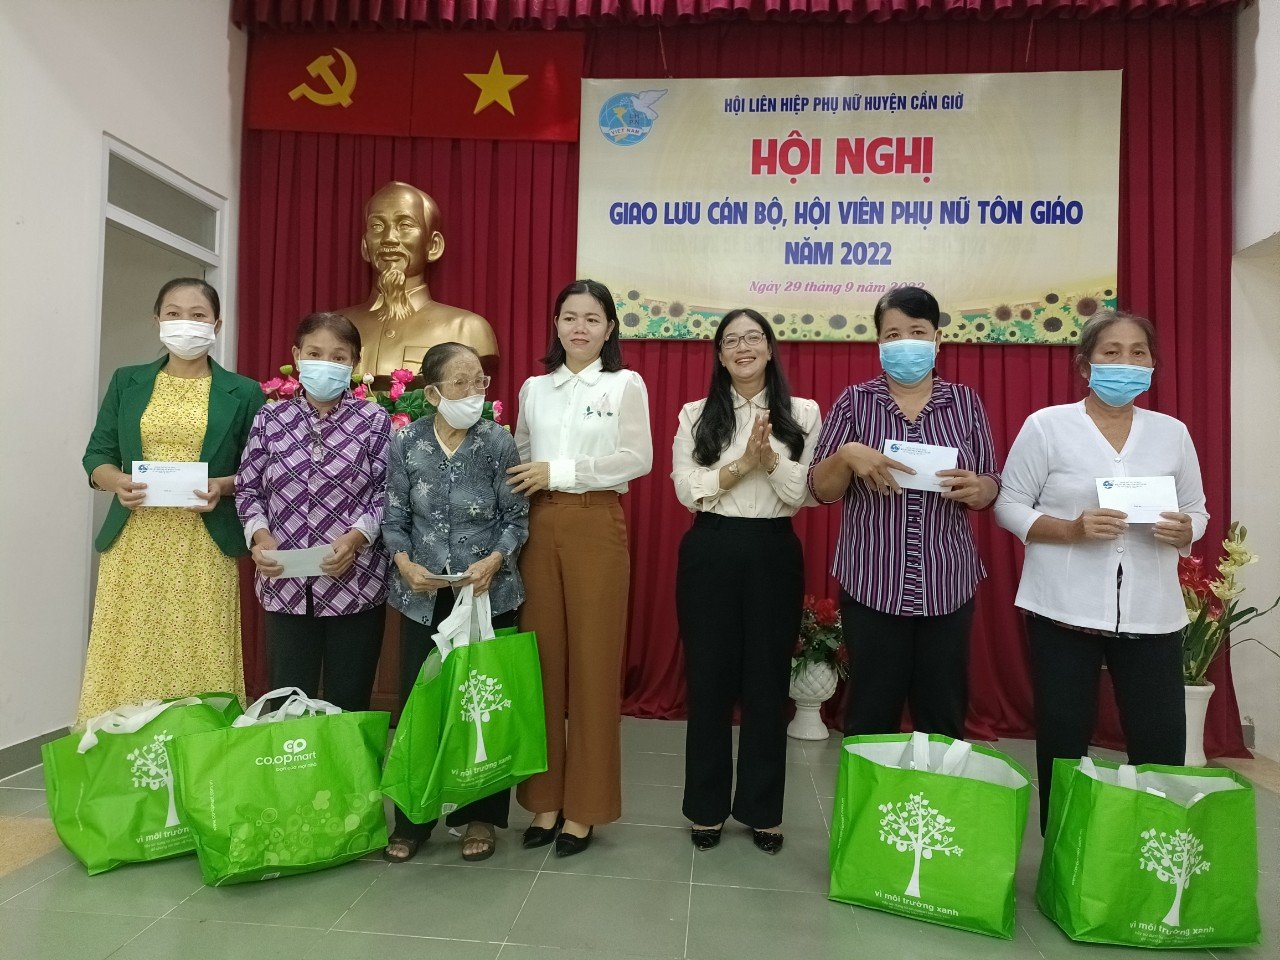 Bà Trần Thị Ngọc Hân – Chủ tịch Hội LHPN H. Cần Giờ (thứ ba từ phải sang) trao quà cho các hội viên nòng cốt 